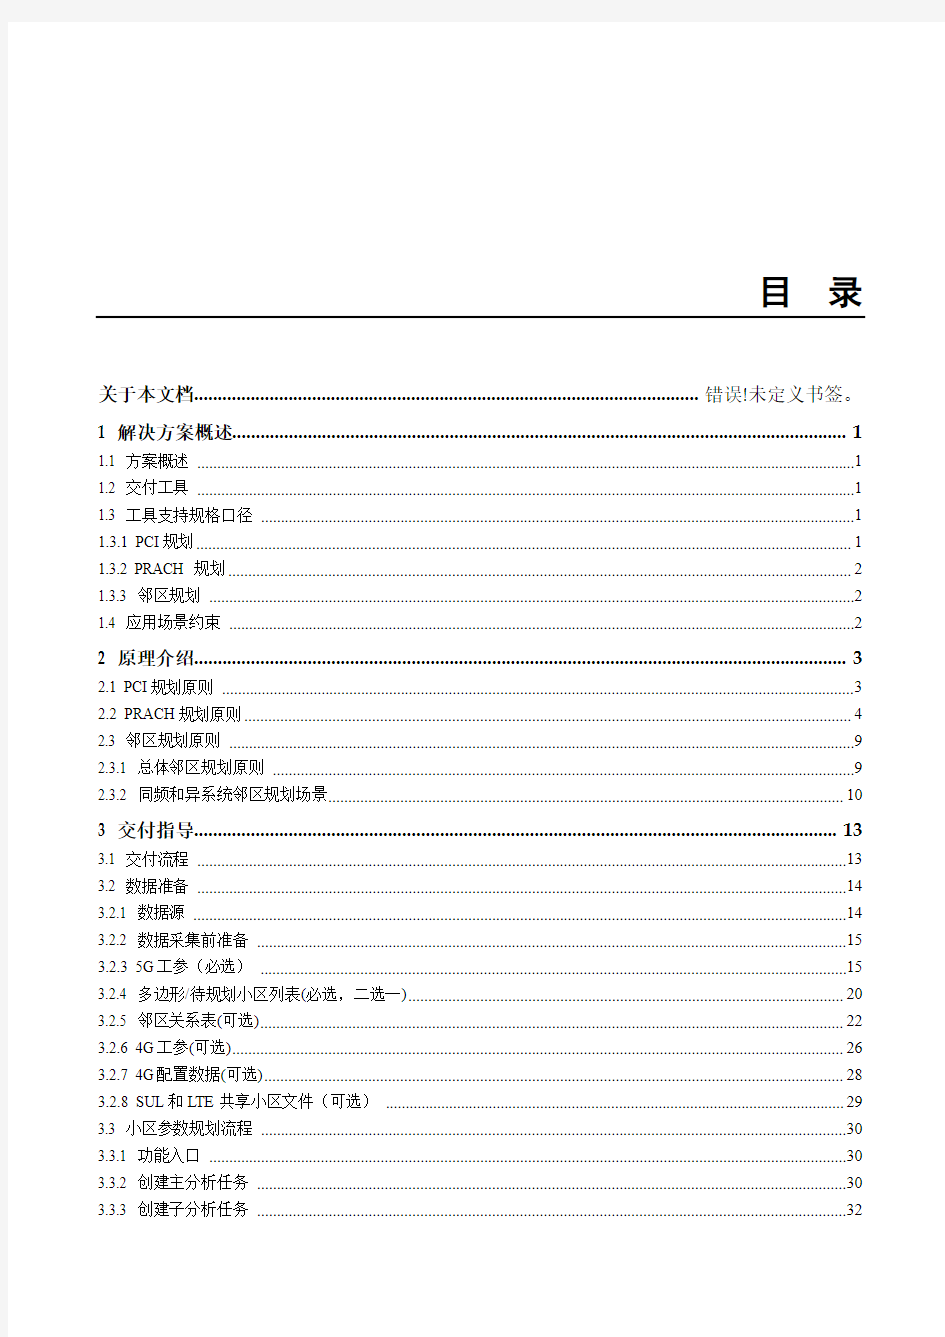 华为5G小区参数规划指导书2020